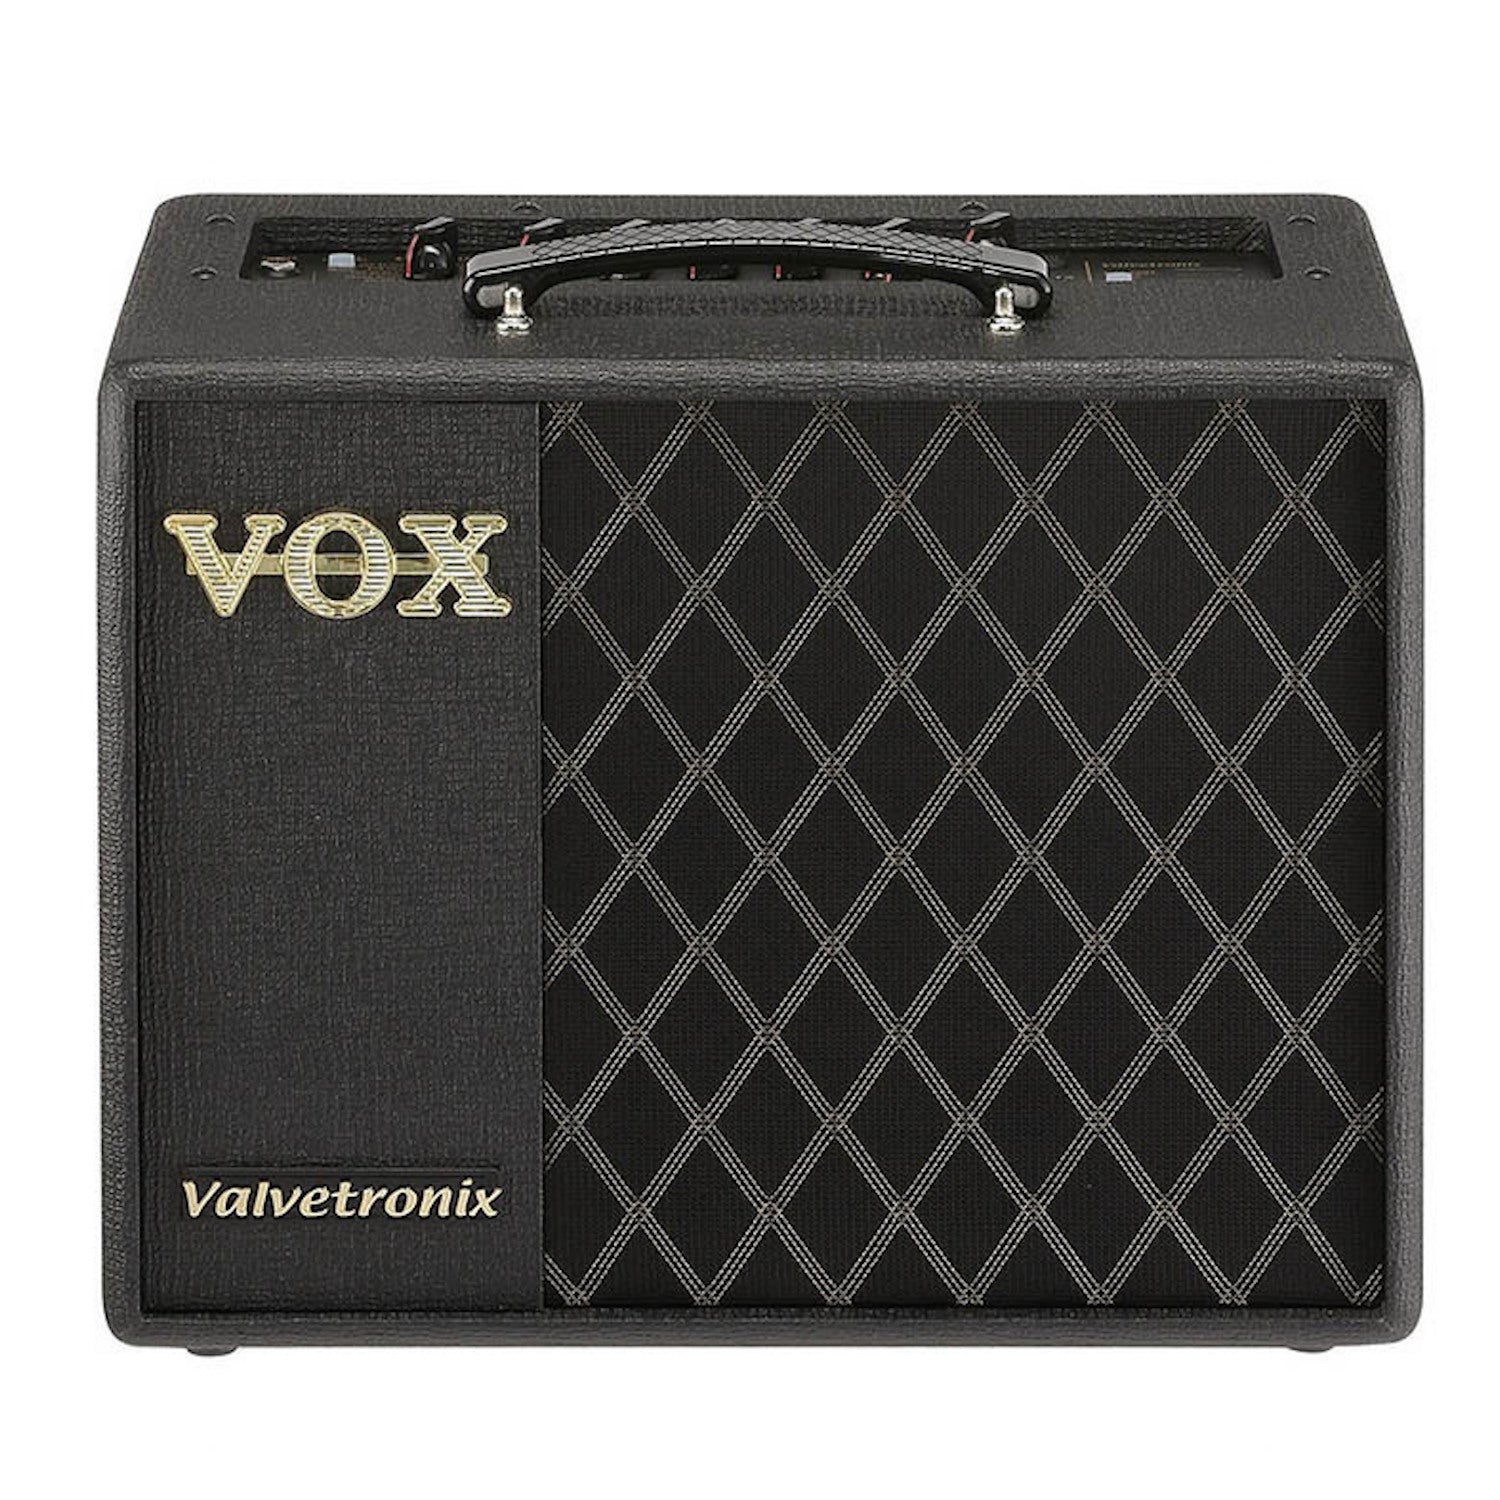 Vox VT20X 20W AMPLIFIER